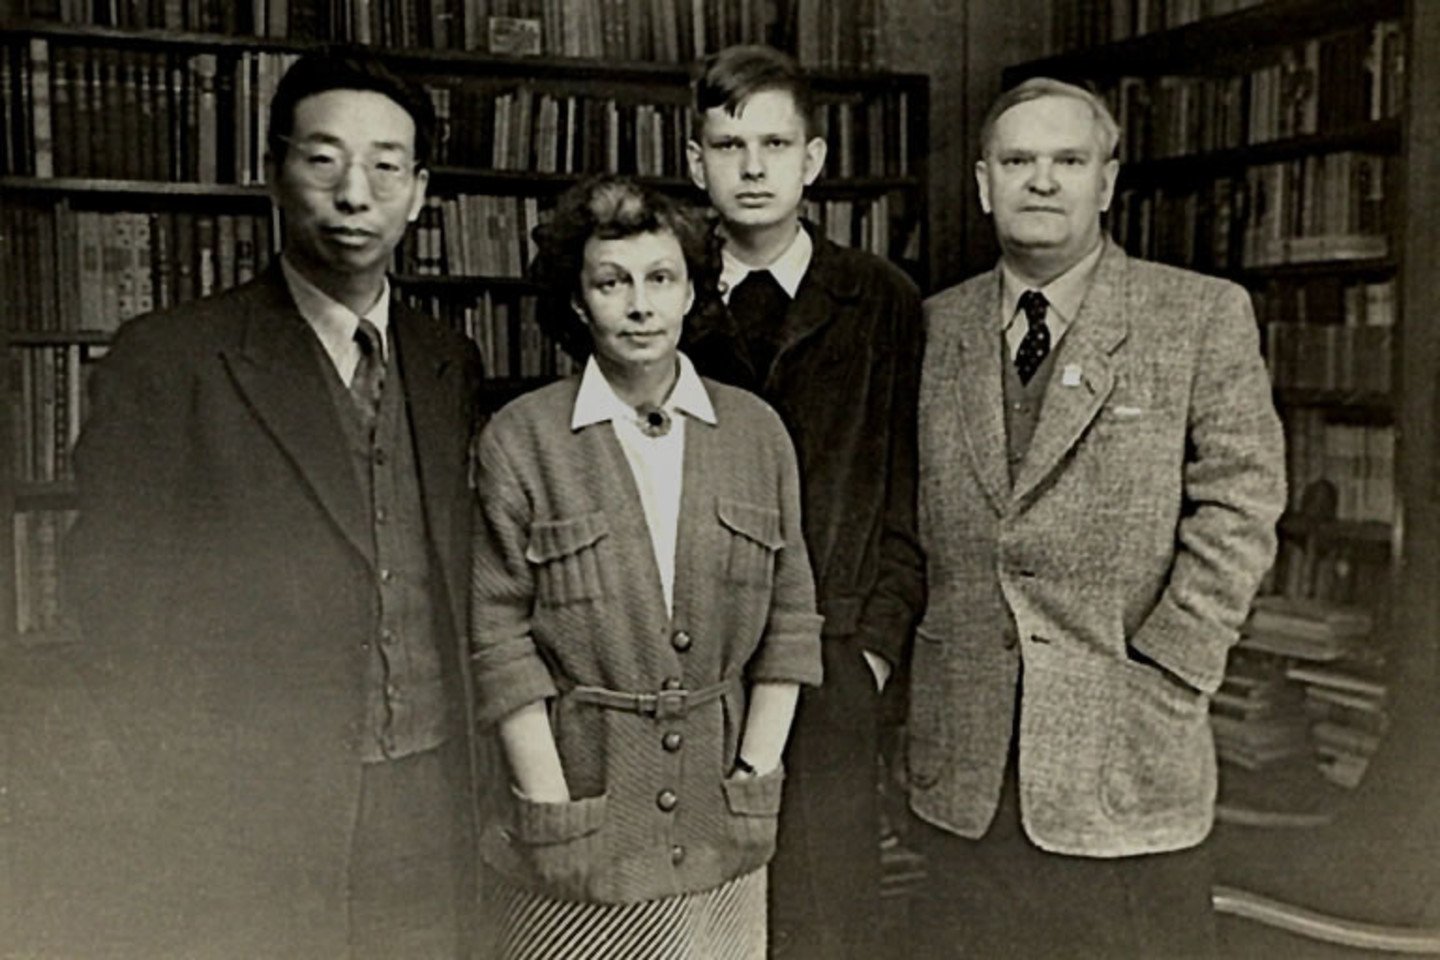 Kinų rašytojas Ge Bao Ciuanis, E. Venclovienė, T. Venclova ir A. Venclova darbo kambaryje, Venclovų namuose. Vilnius, 1955 m. gegužė<br>Venclovų namų-muziejaus archyvo nuotr.